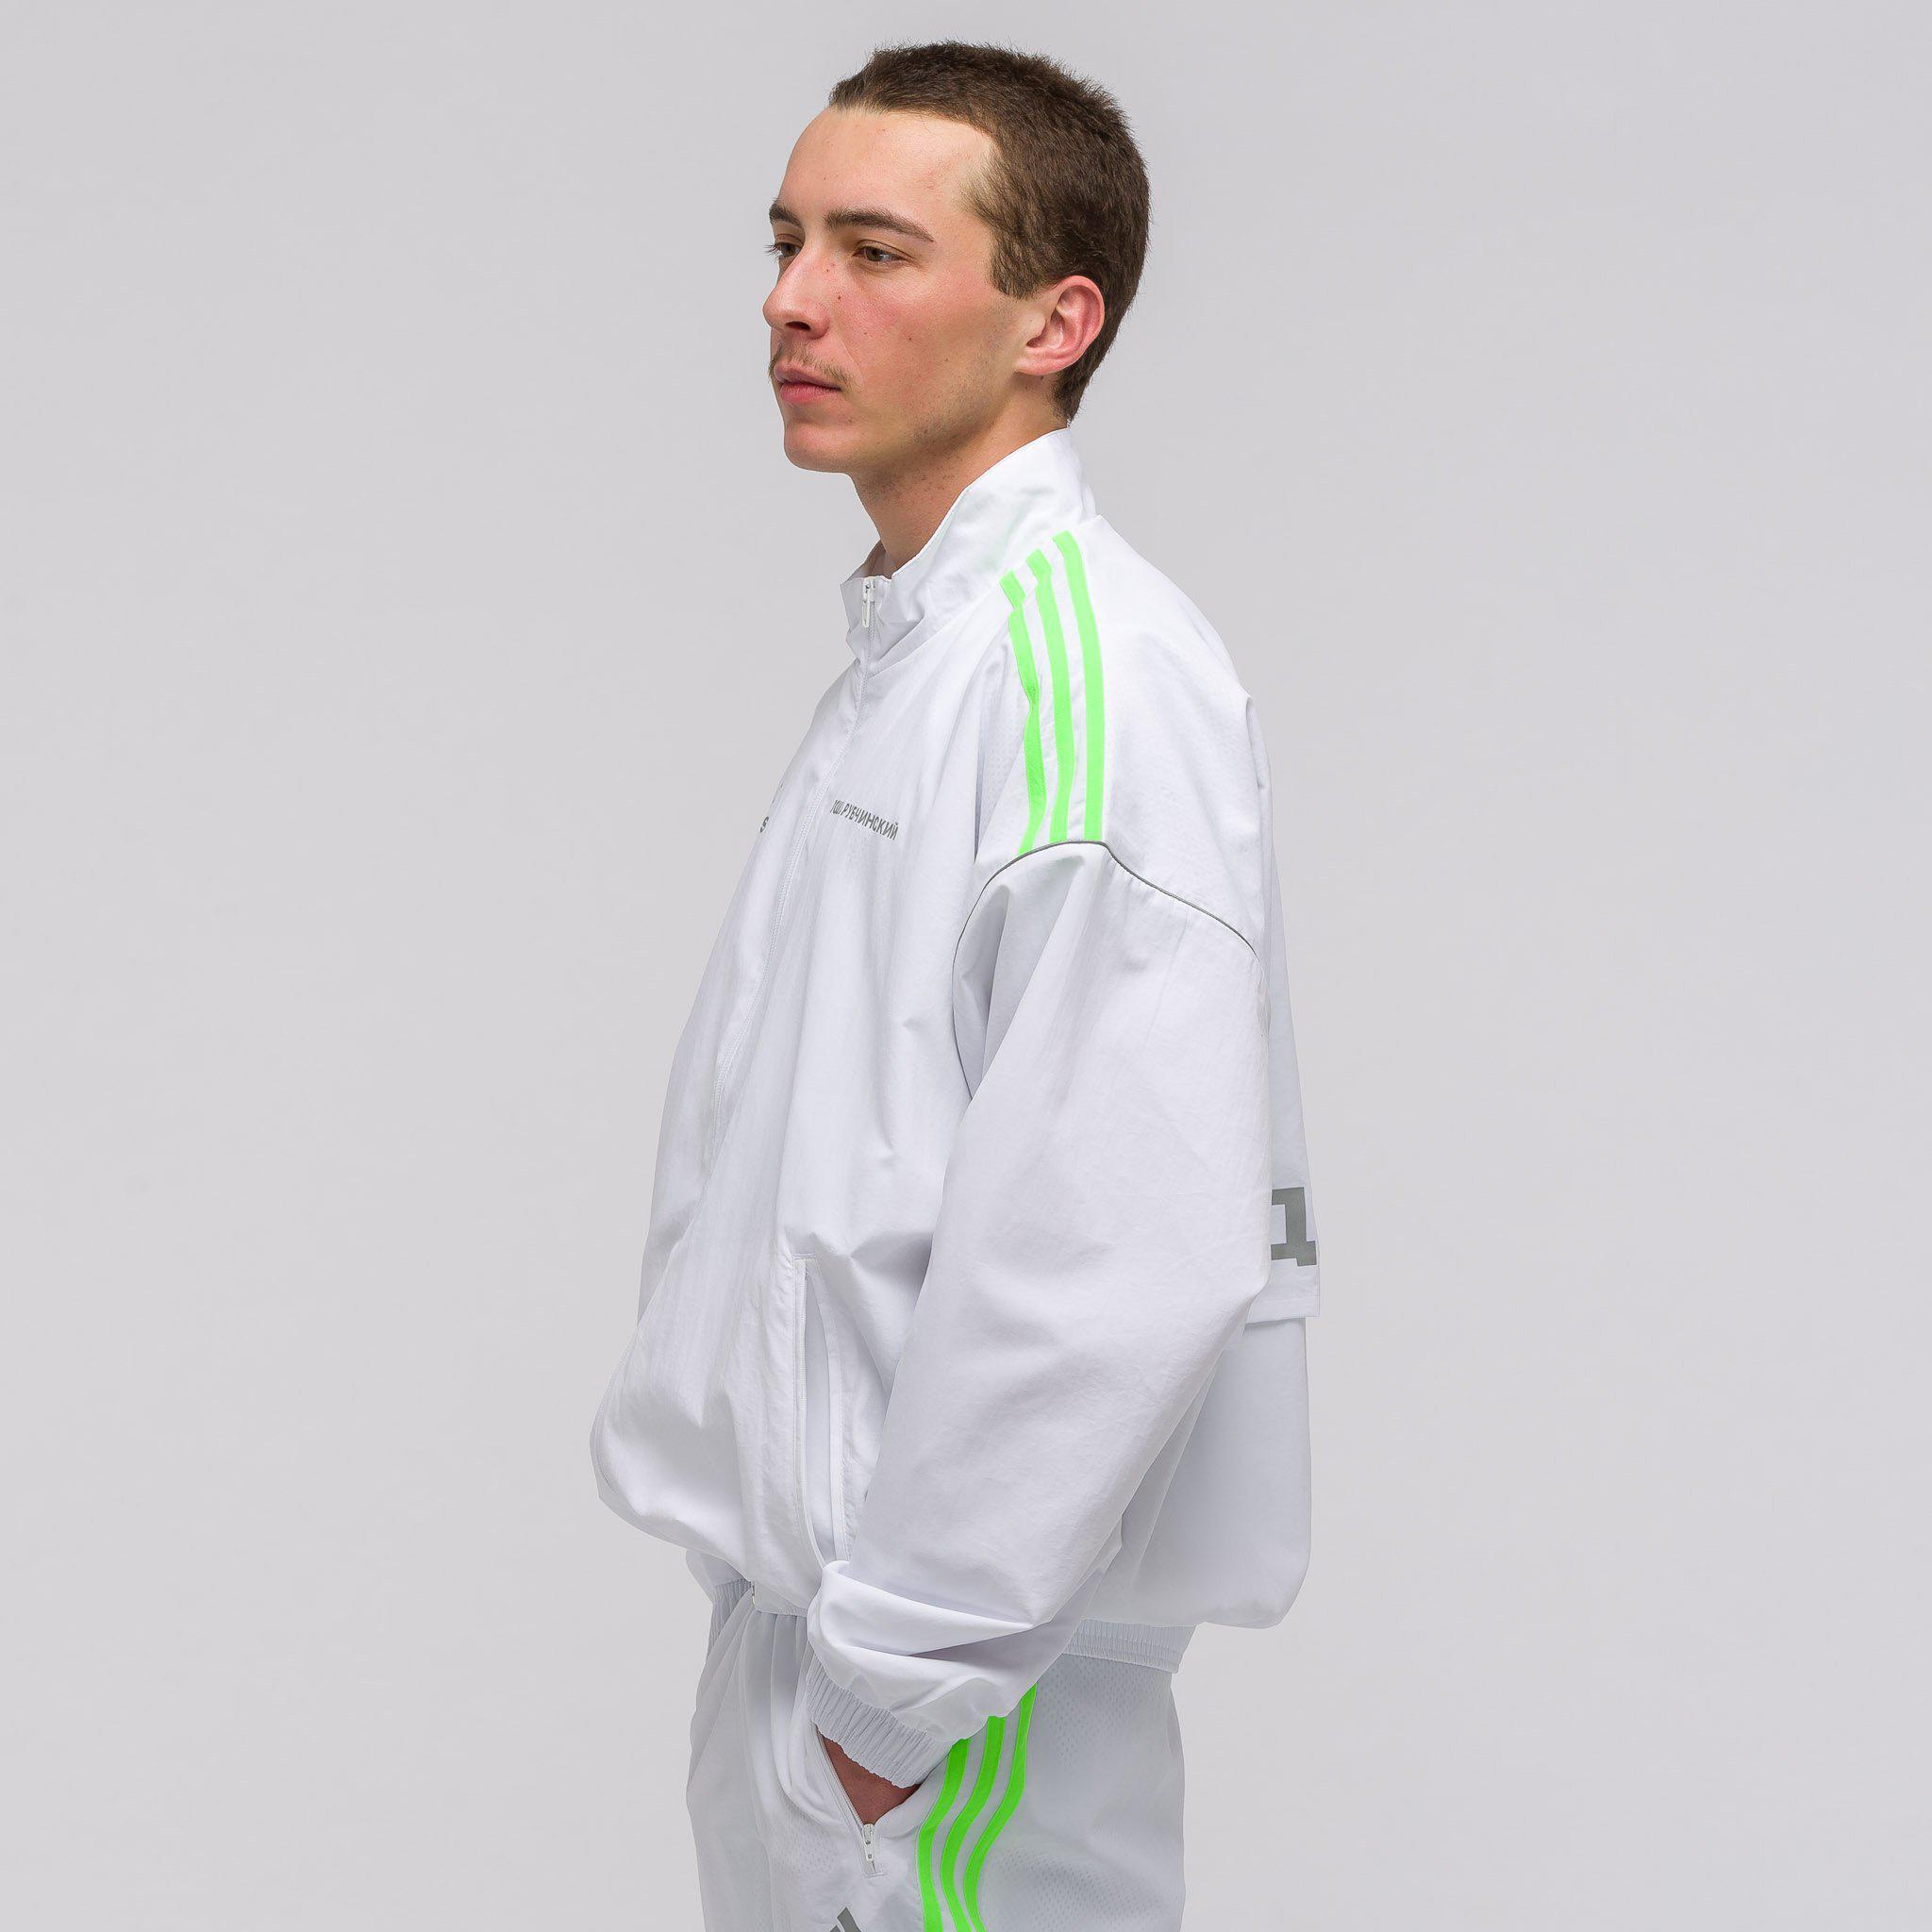 gosha x adidas track jacket